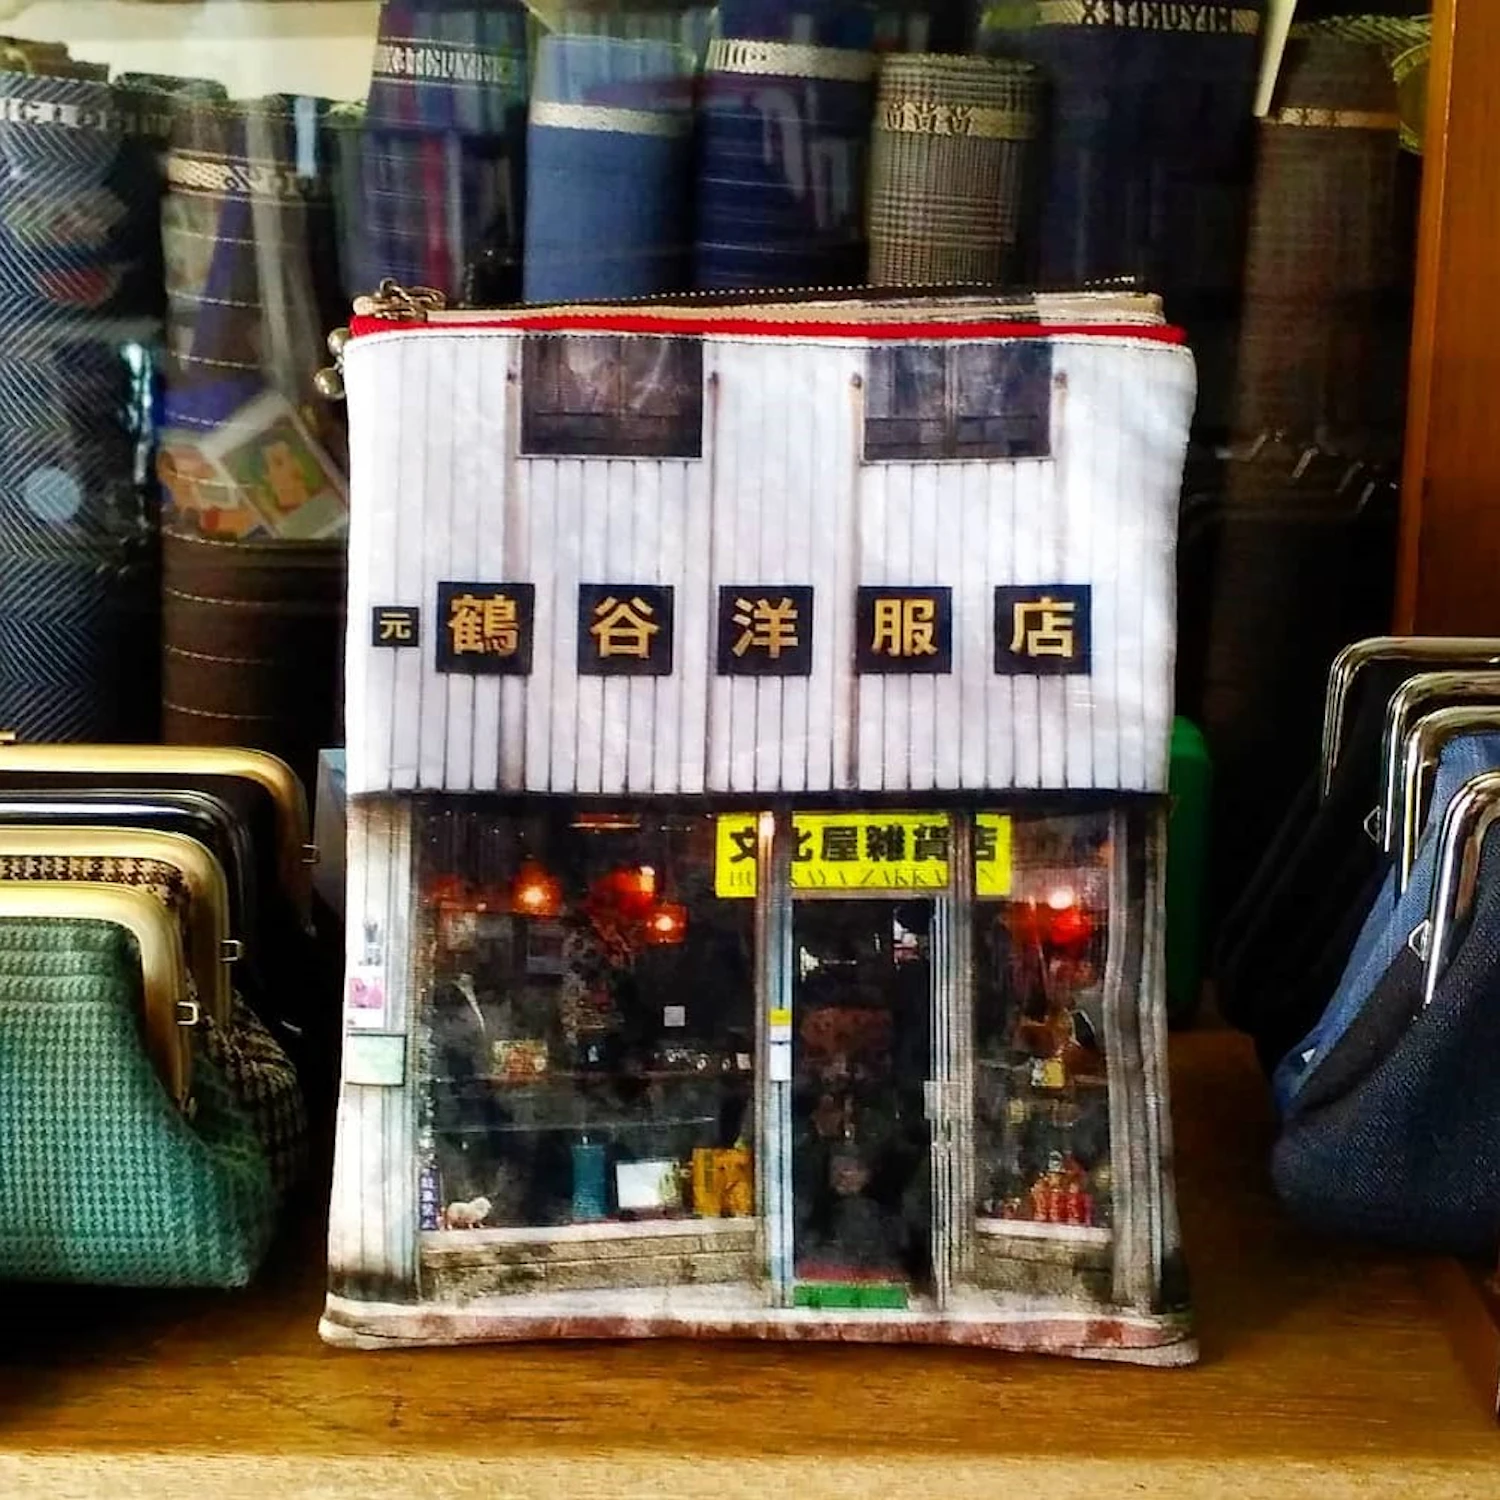 文化屋雑貨店の看板入り画像を使った鶴谷オリジナル商品「テンポーチ」